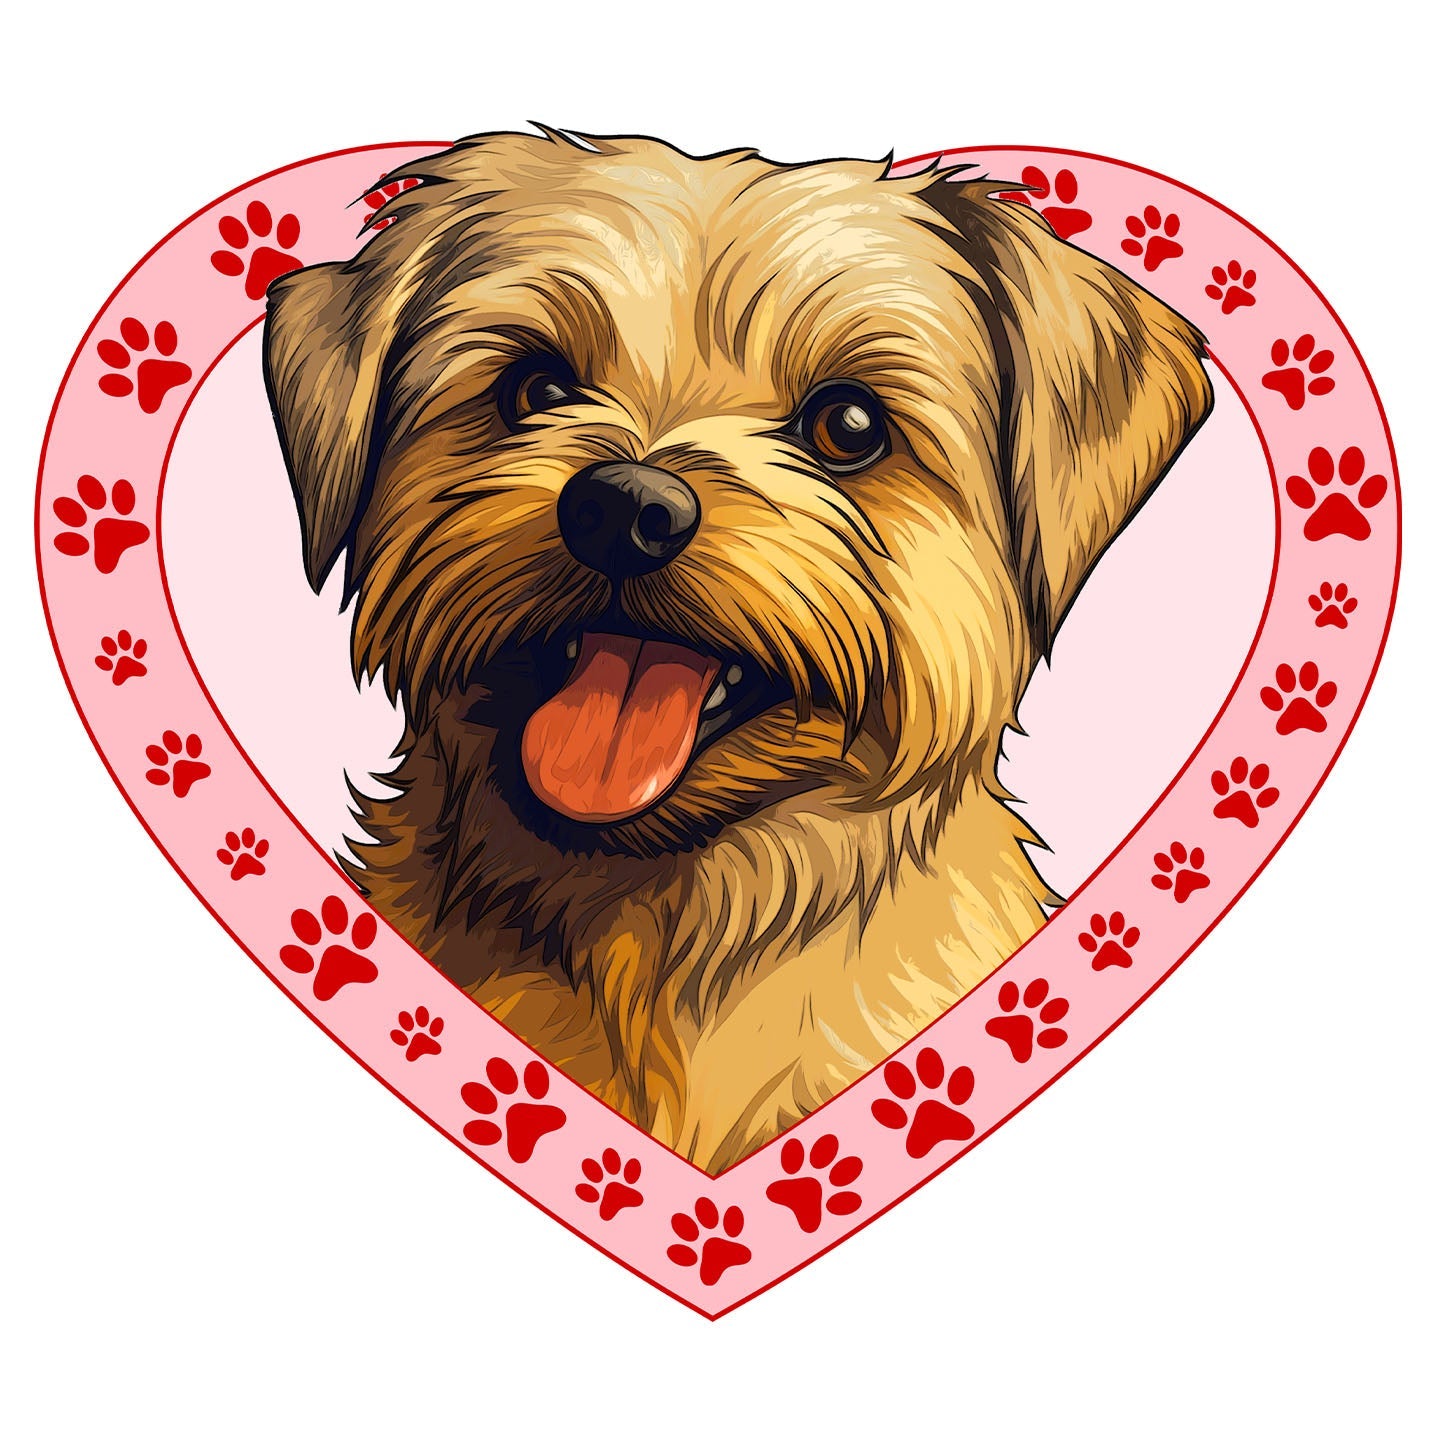 Norfolk Terrier Illustration In Heart - Adult Unisex T-Shirt